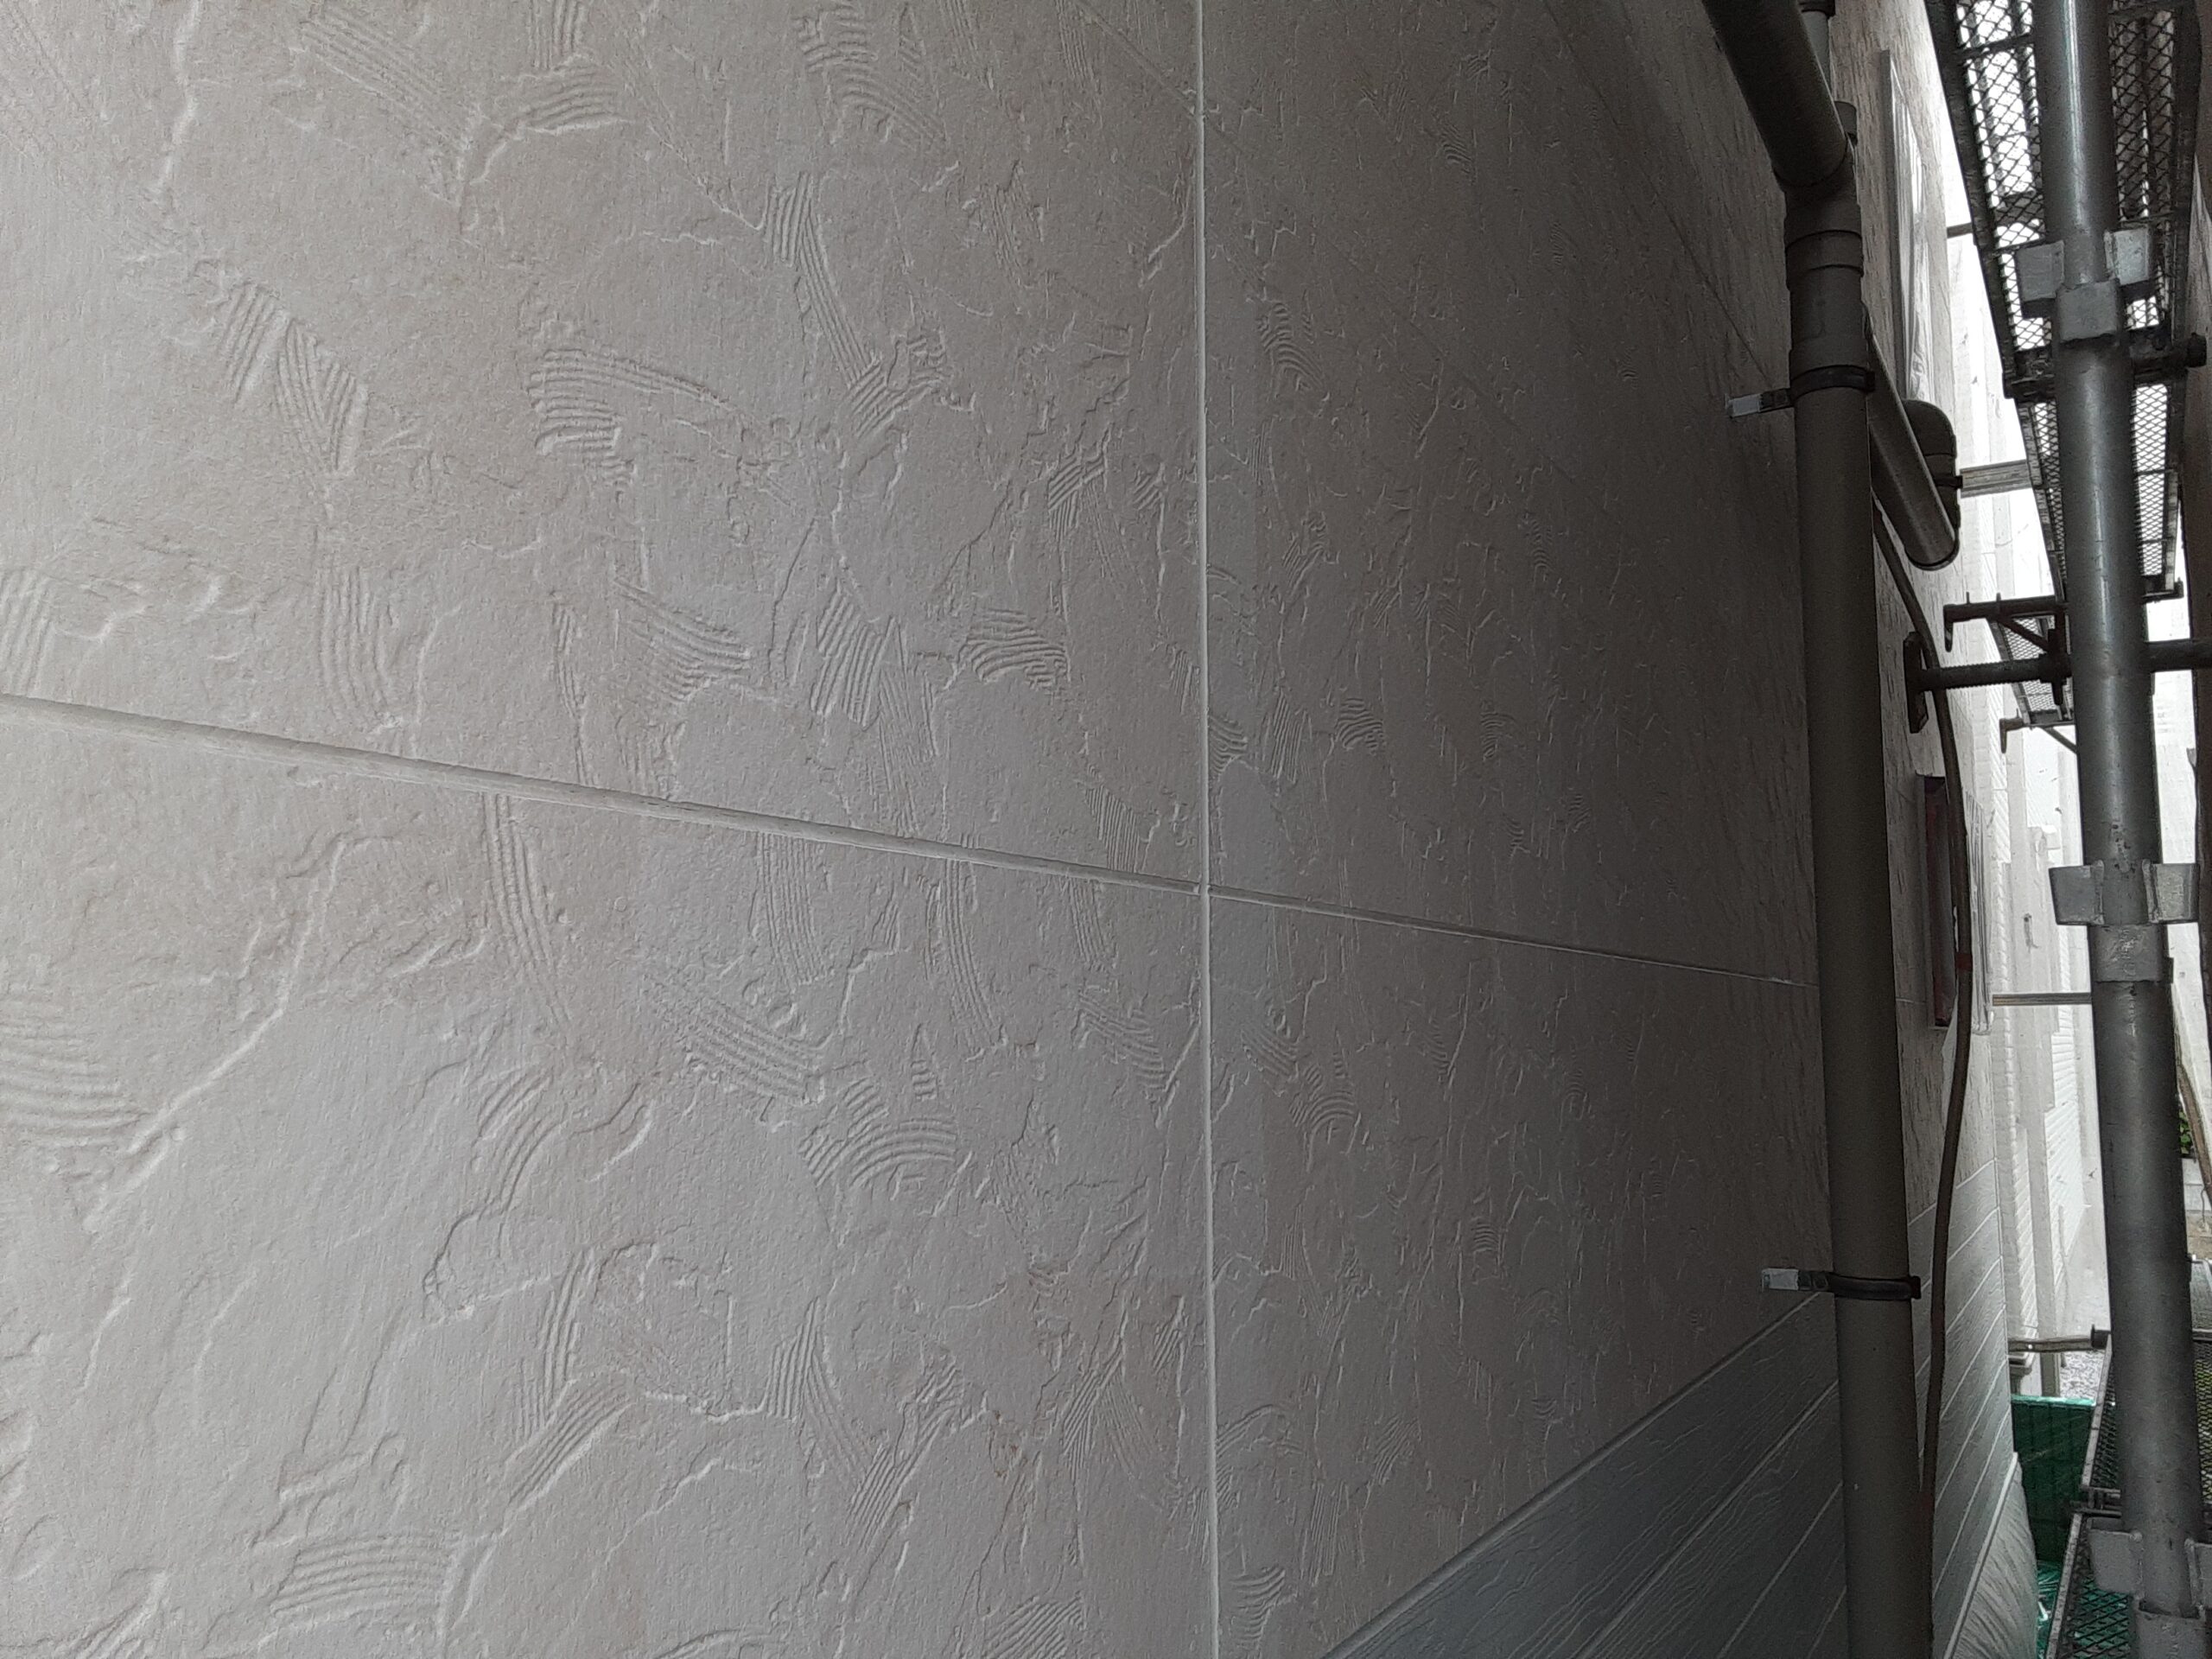 埼玉県さいたま市桜区のA様邸（木造3階建て）にて外壁の養生作業・外壁の塗装工事